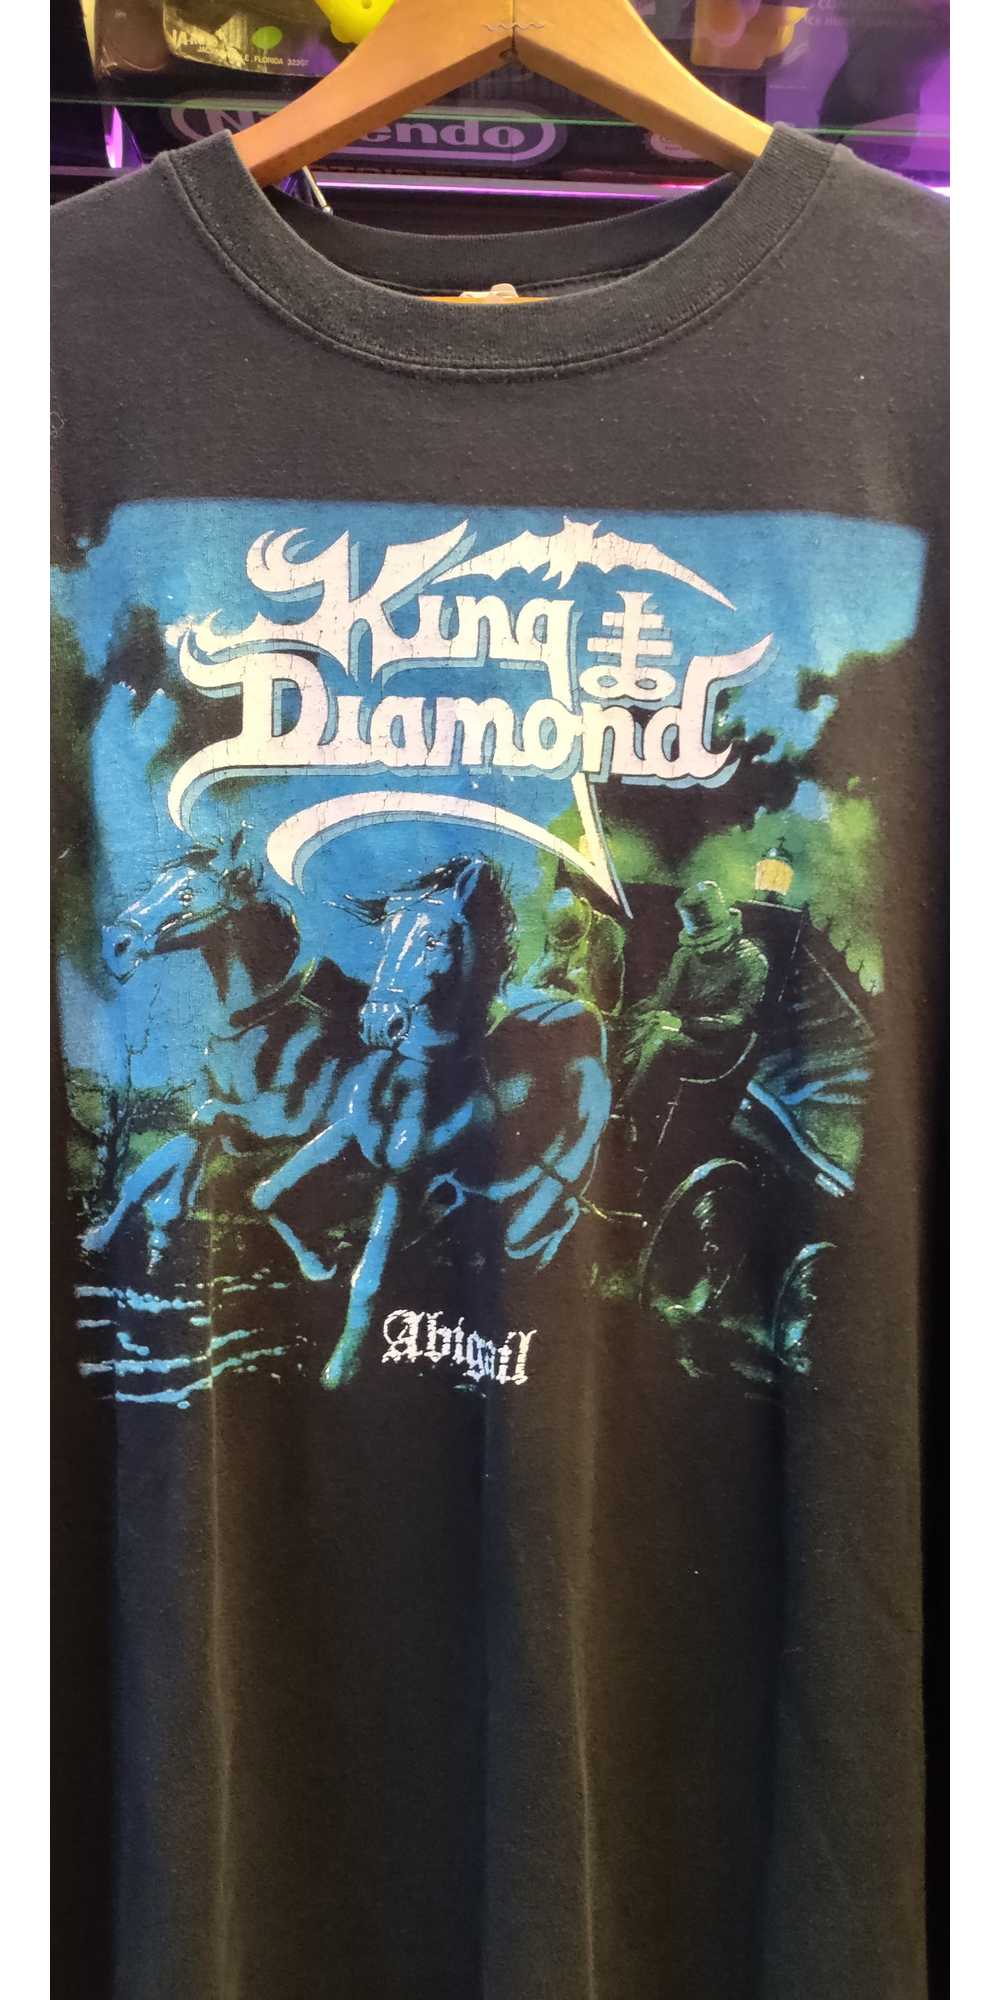 Vintage King Diamond Abigail tee shirt - image 2